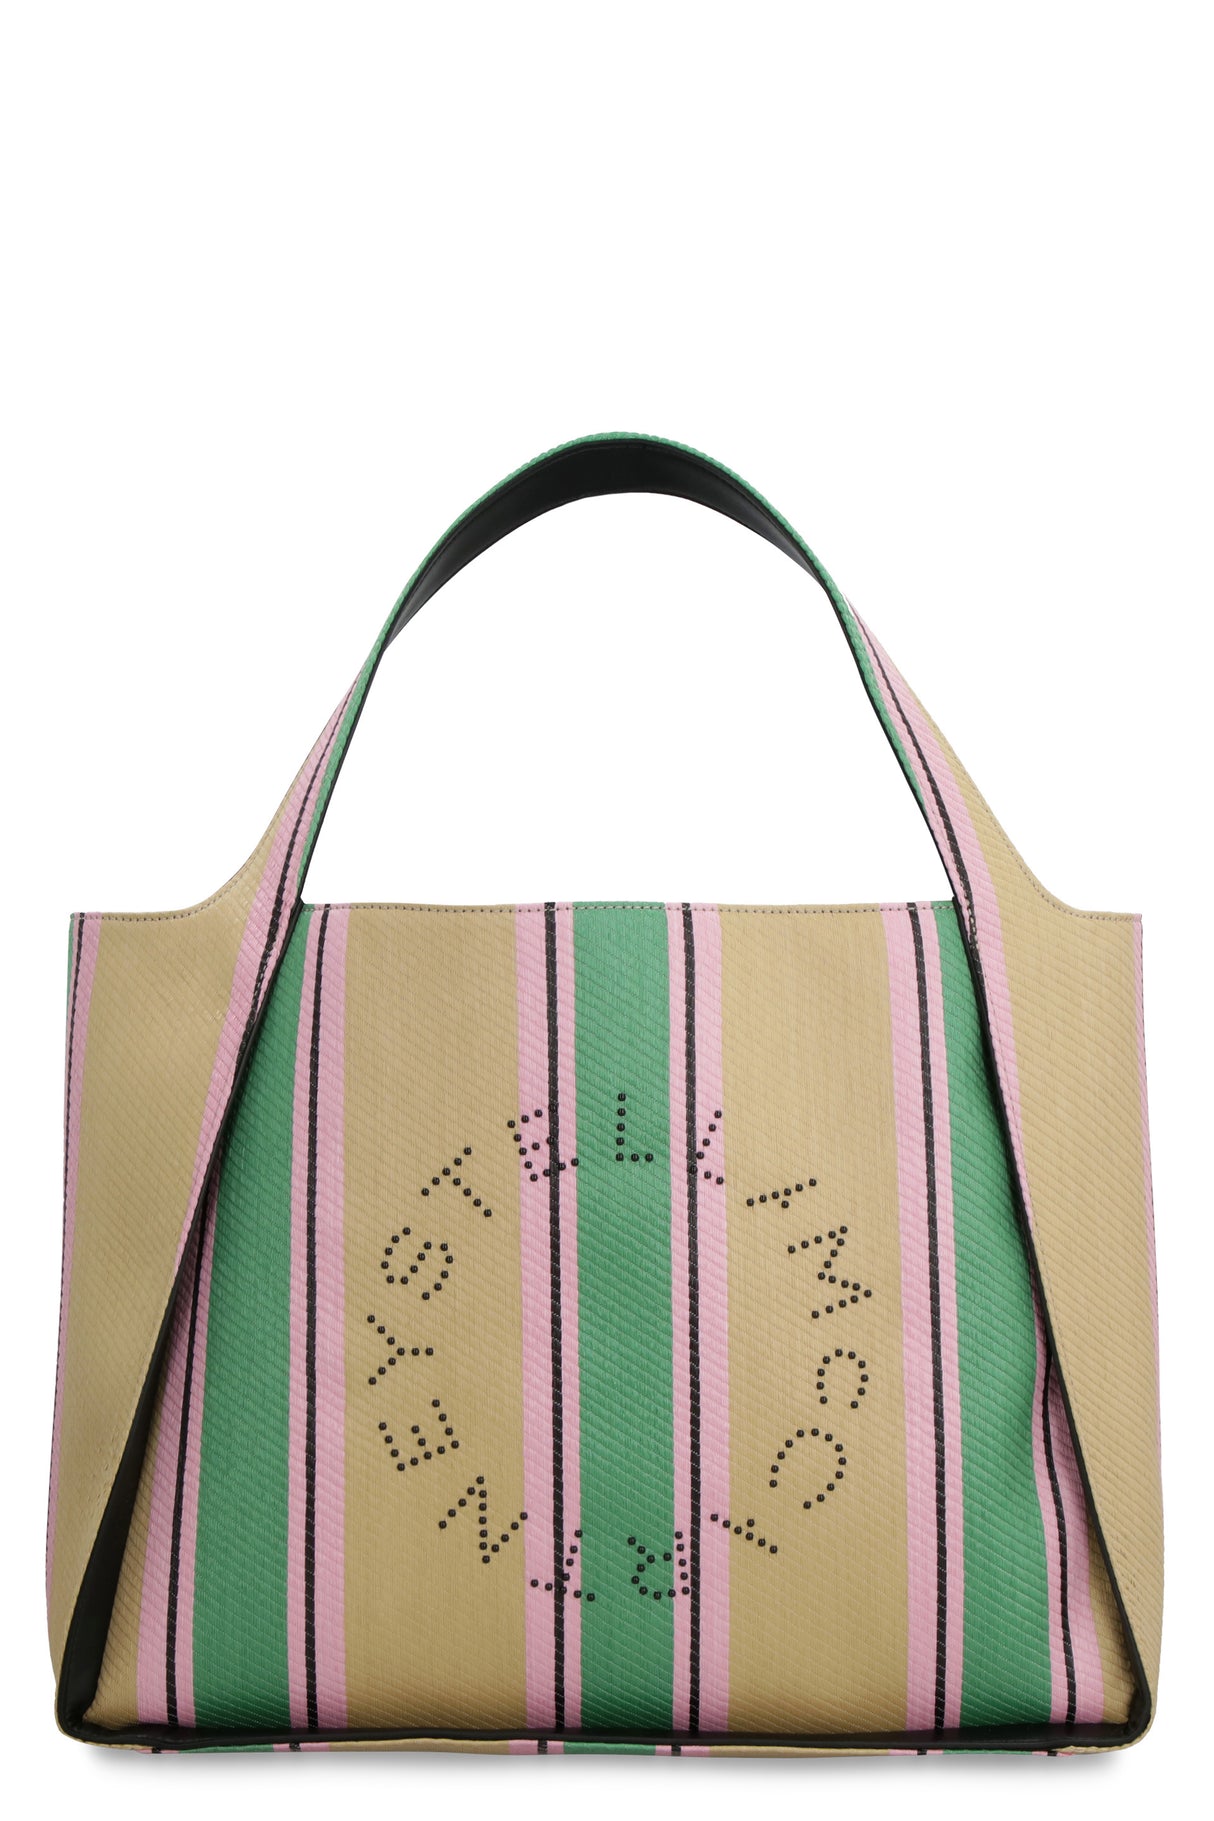 Multicolor Striped Raffia Tote Handbag with Clutch for Women